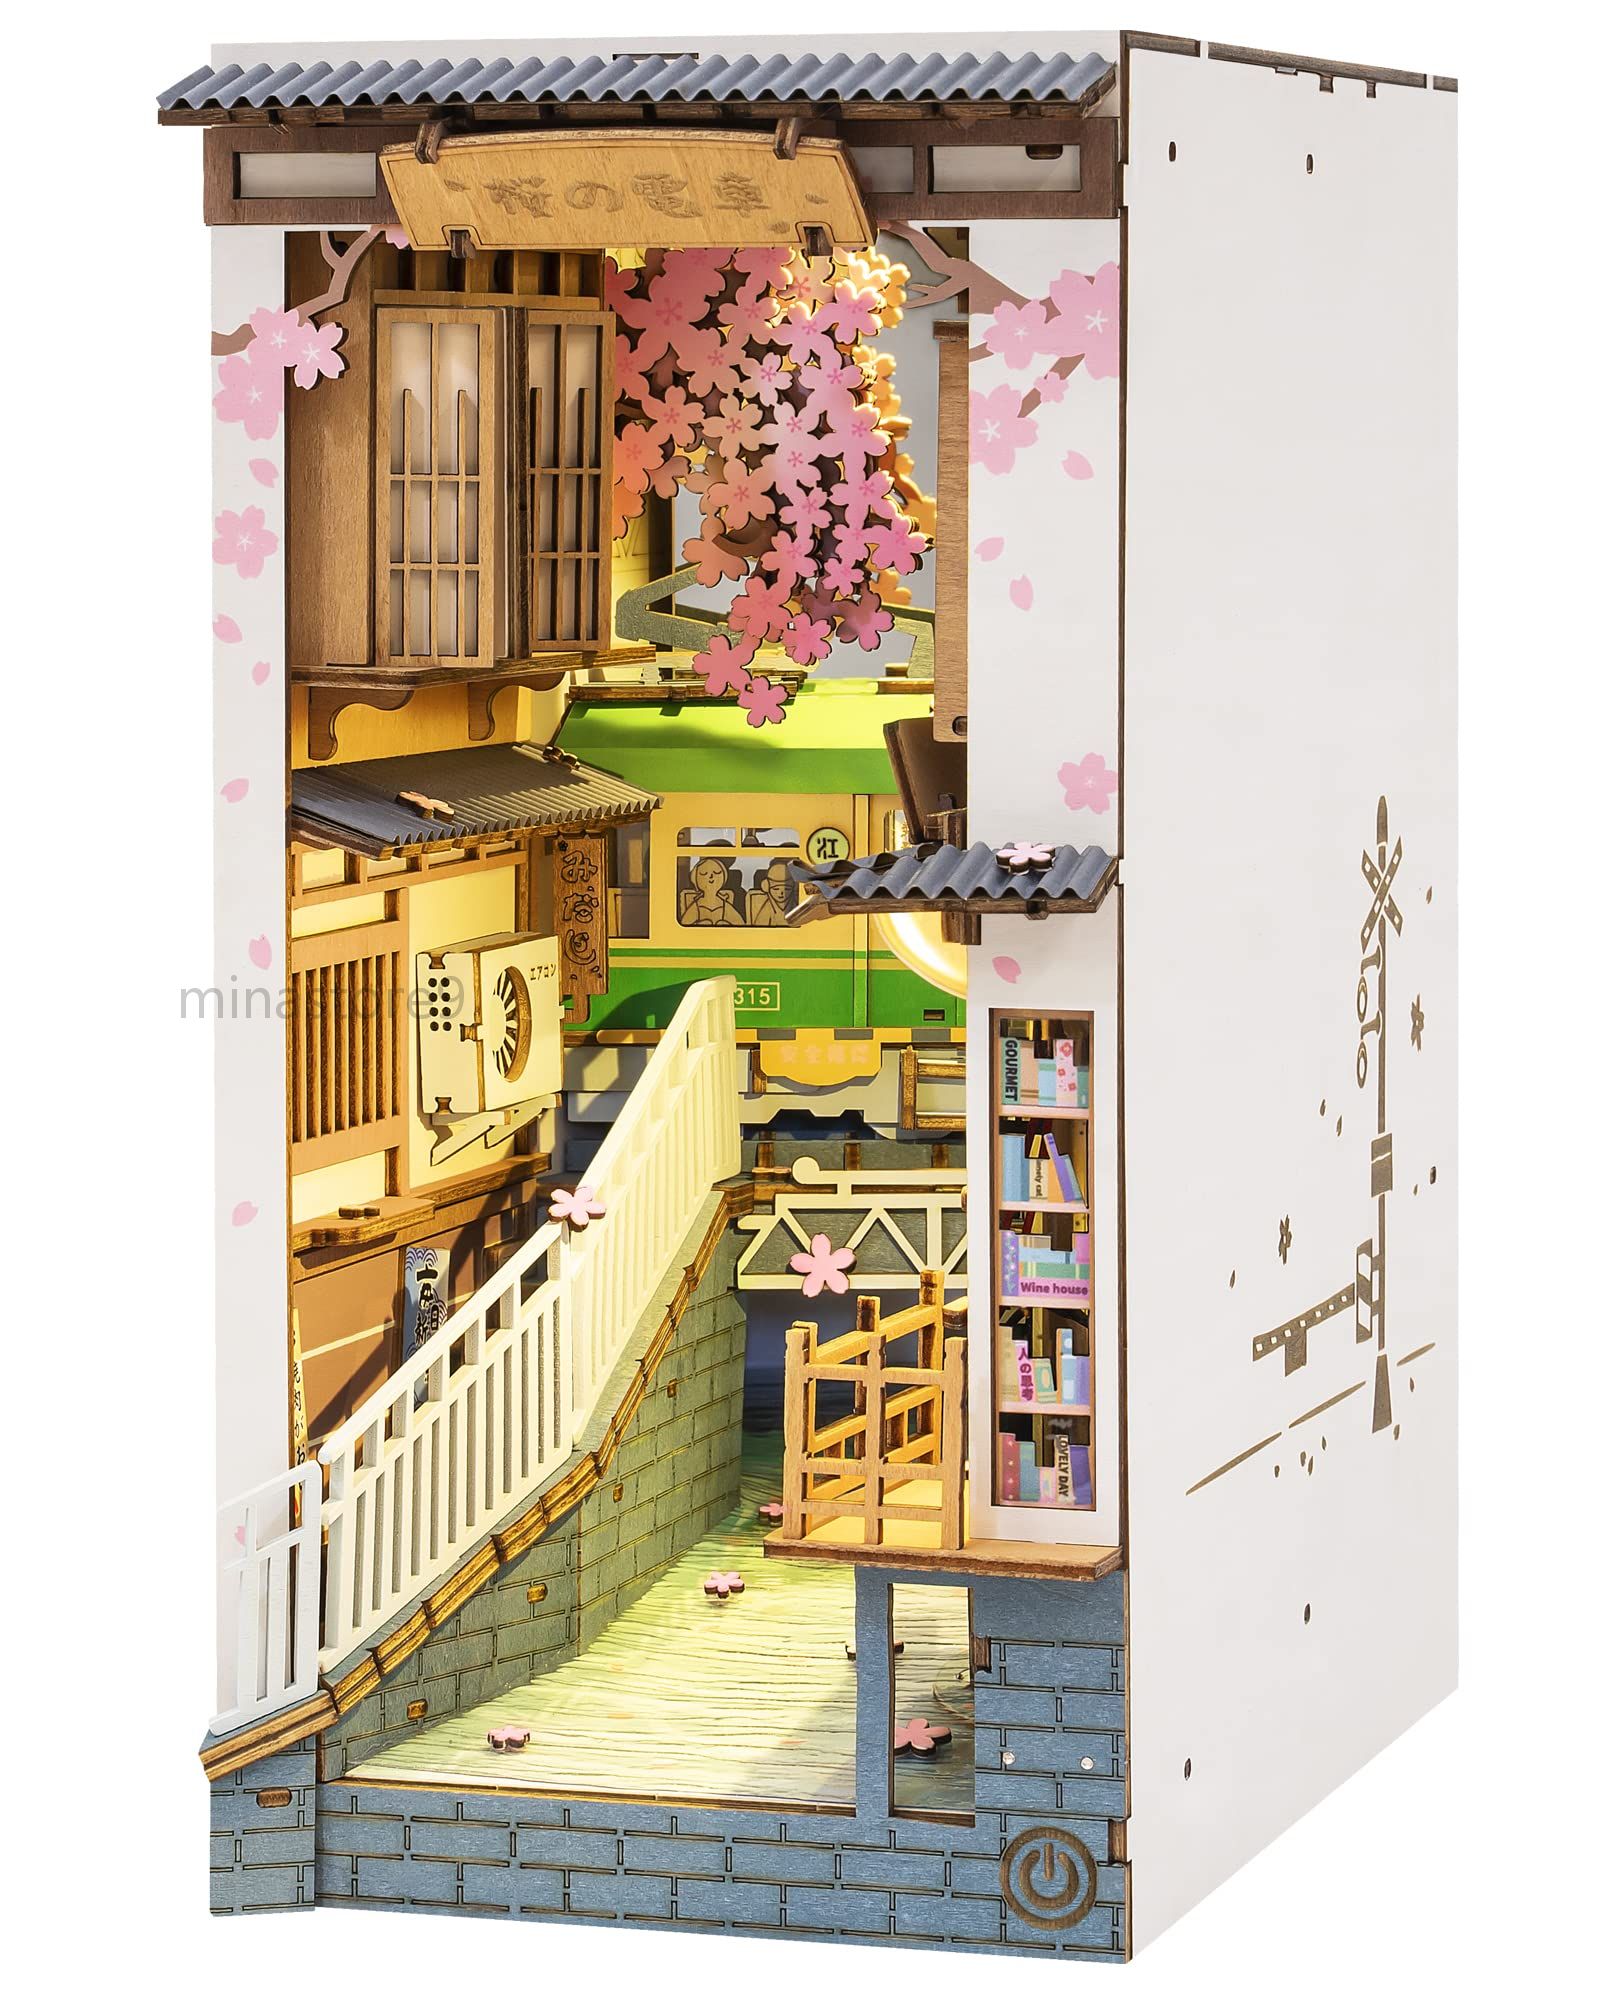 「桜の駅ブックノックキット」このブックシェルフインサートデコ3Dウッドパズルモデルキットは、静かで癒しのある日常生活にインスパイアされています。ゆっくりと通り過ぎる路面電車、書店の窓に座る猫、風に舞う桜の花などを見ることができます。言い換えれば、これは単なるDIYの本棚コーナープロジェクトクラフトキットにとどまらず、美しいコレクター向け建物や本棚の装飾品です。 この木製ブックヌークキットは、クリエイティブで個性的な贈り物としてもおすすめです。大切な人への贈り物として、また自分へのご褒美としても最適です。また、自分の手で作ることで、工芸品、ミニチュア、手作り、DIYやクラフトが好きな方へ、プレゼントにも最適です。 この本棚のミニチュアドールハウスは、テーブルや部屋の装飾の一部として使用するように特別に設計されて、ご自宅に別々の魅力を加えます。本棚の微妙な薄暗さと、ジオラマに内蔵されたランプが絶妙な感じで、異次元への通路みたいな感じに見えてしまいます。